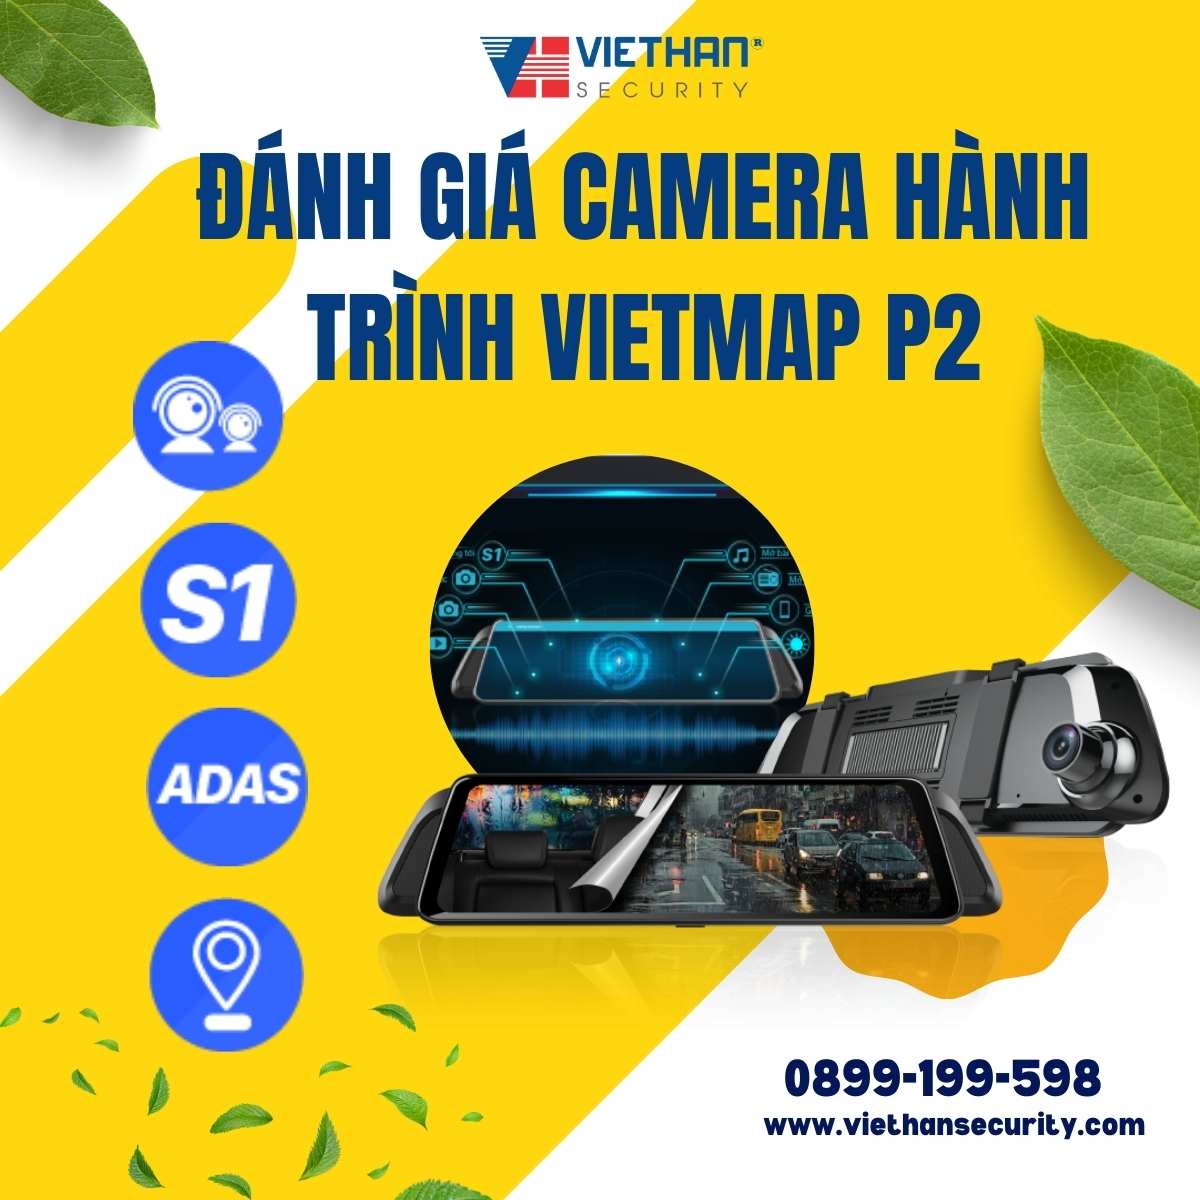 Đánh giá camera hành trình Vietmap P2 - Giải pháp an toàn và đáng tin cậy cho việc lái xe